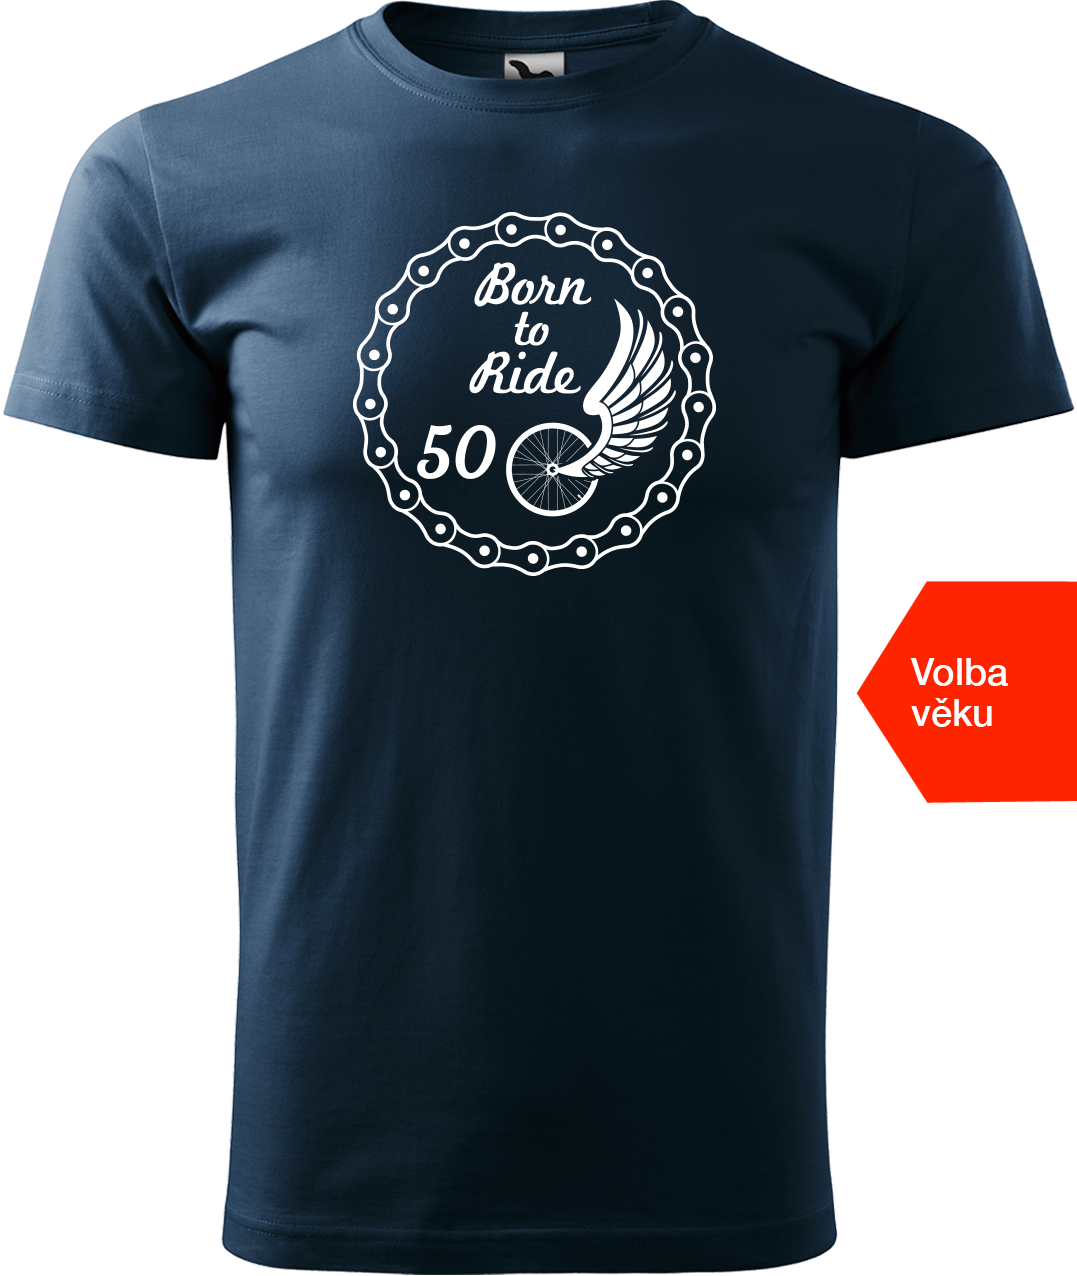 Pánské tričko pro cyklistu s věkem - Born to Ride (wings) Velikost: S, Barva: Námořní modrá (02)